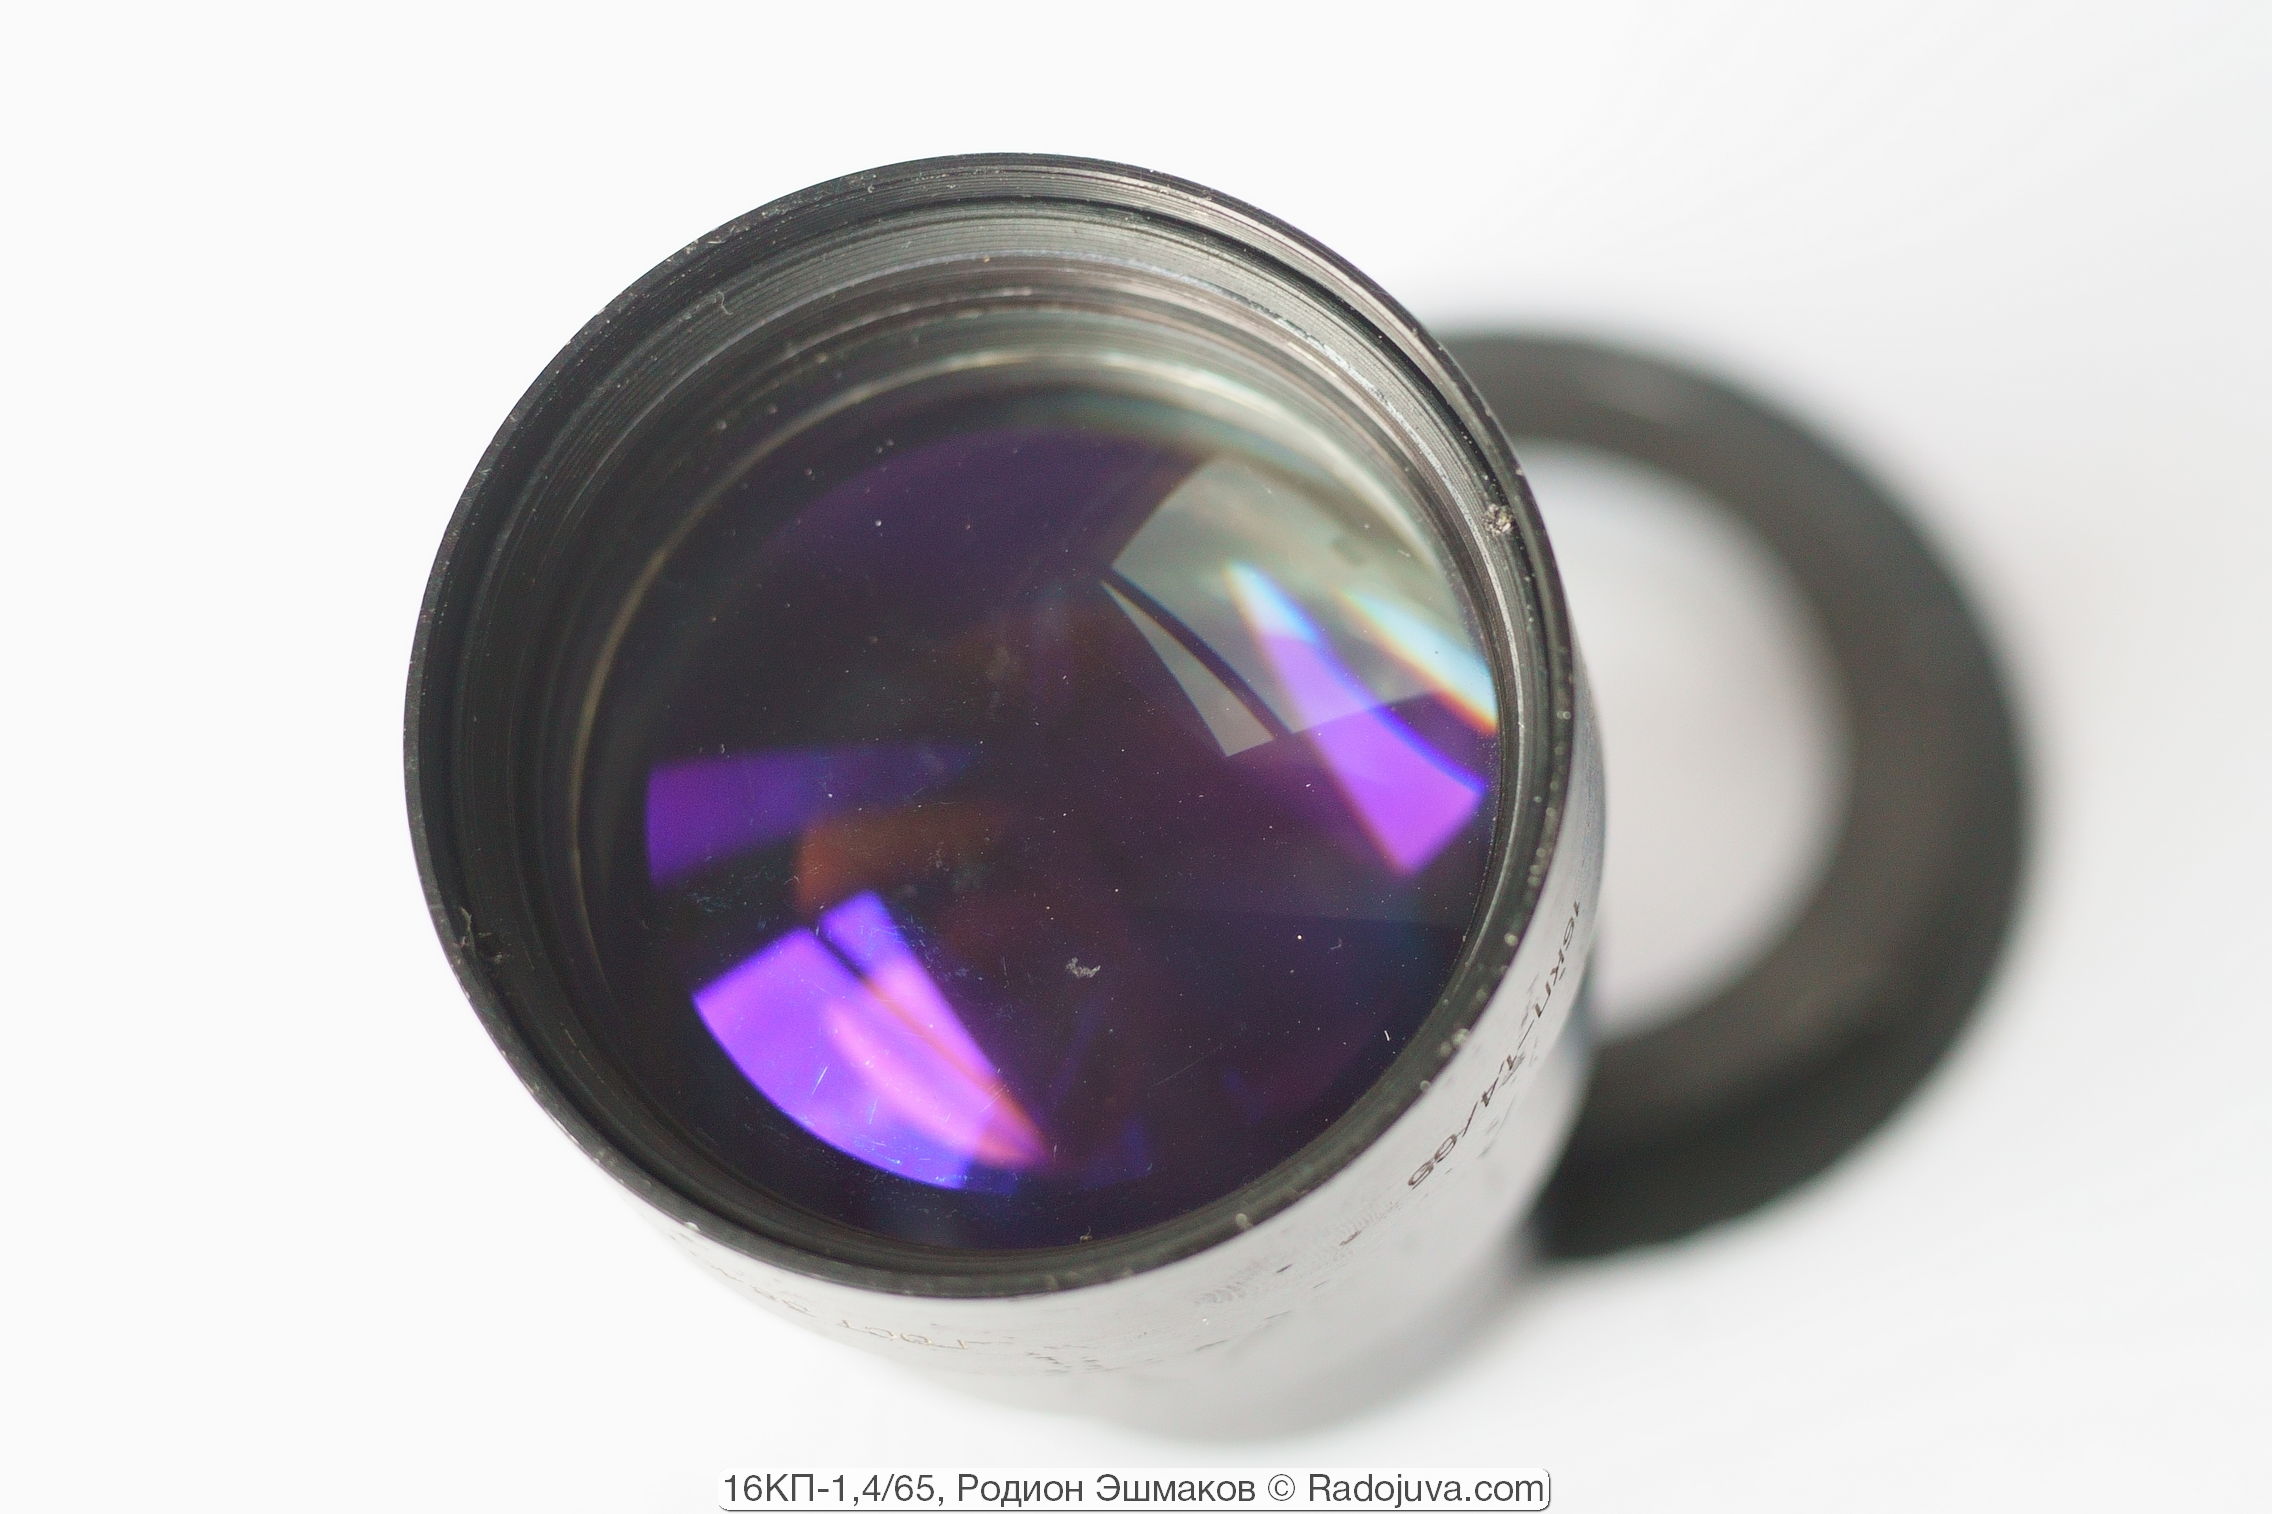 Violet coating of the front lens element.